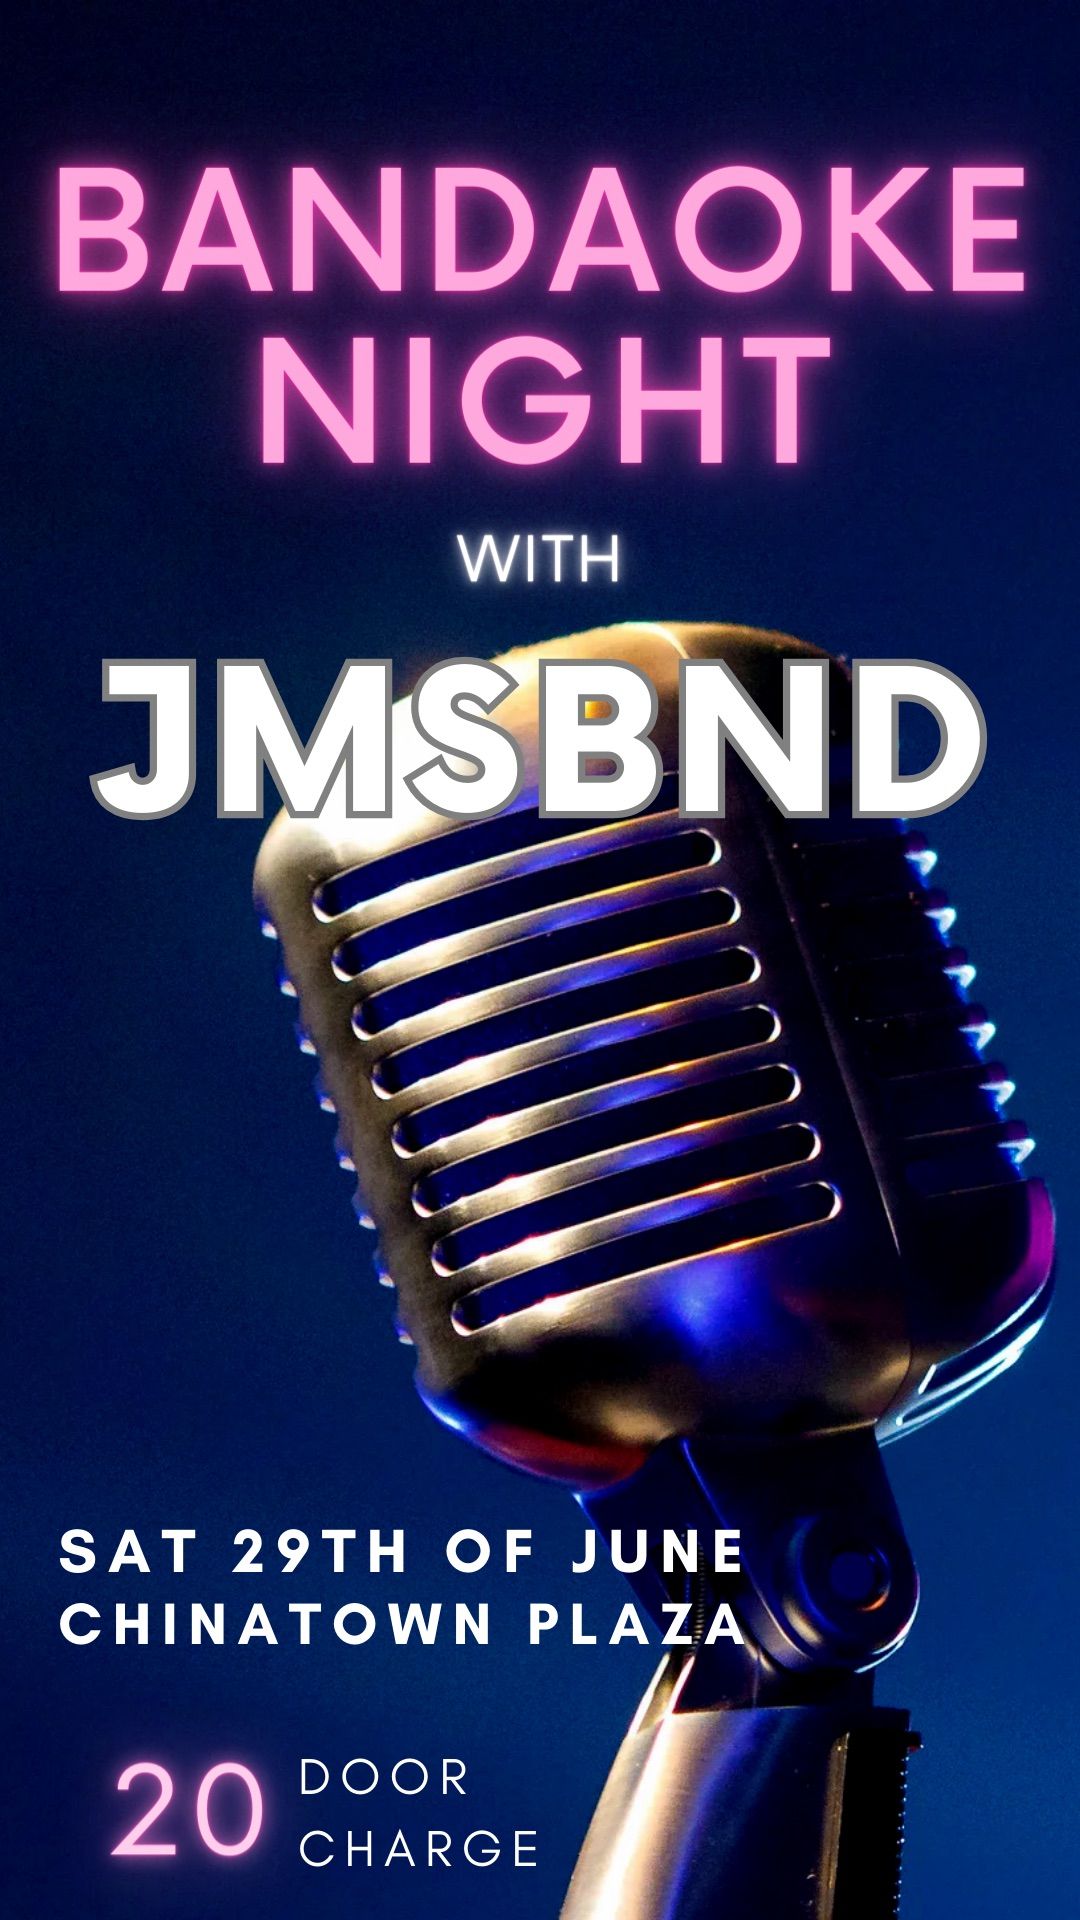 Bandaoke Night With JMSBND